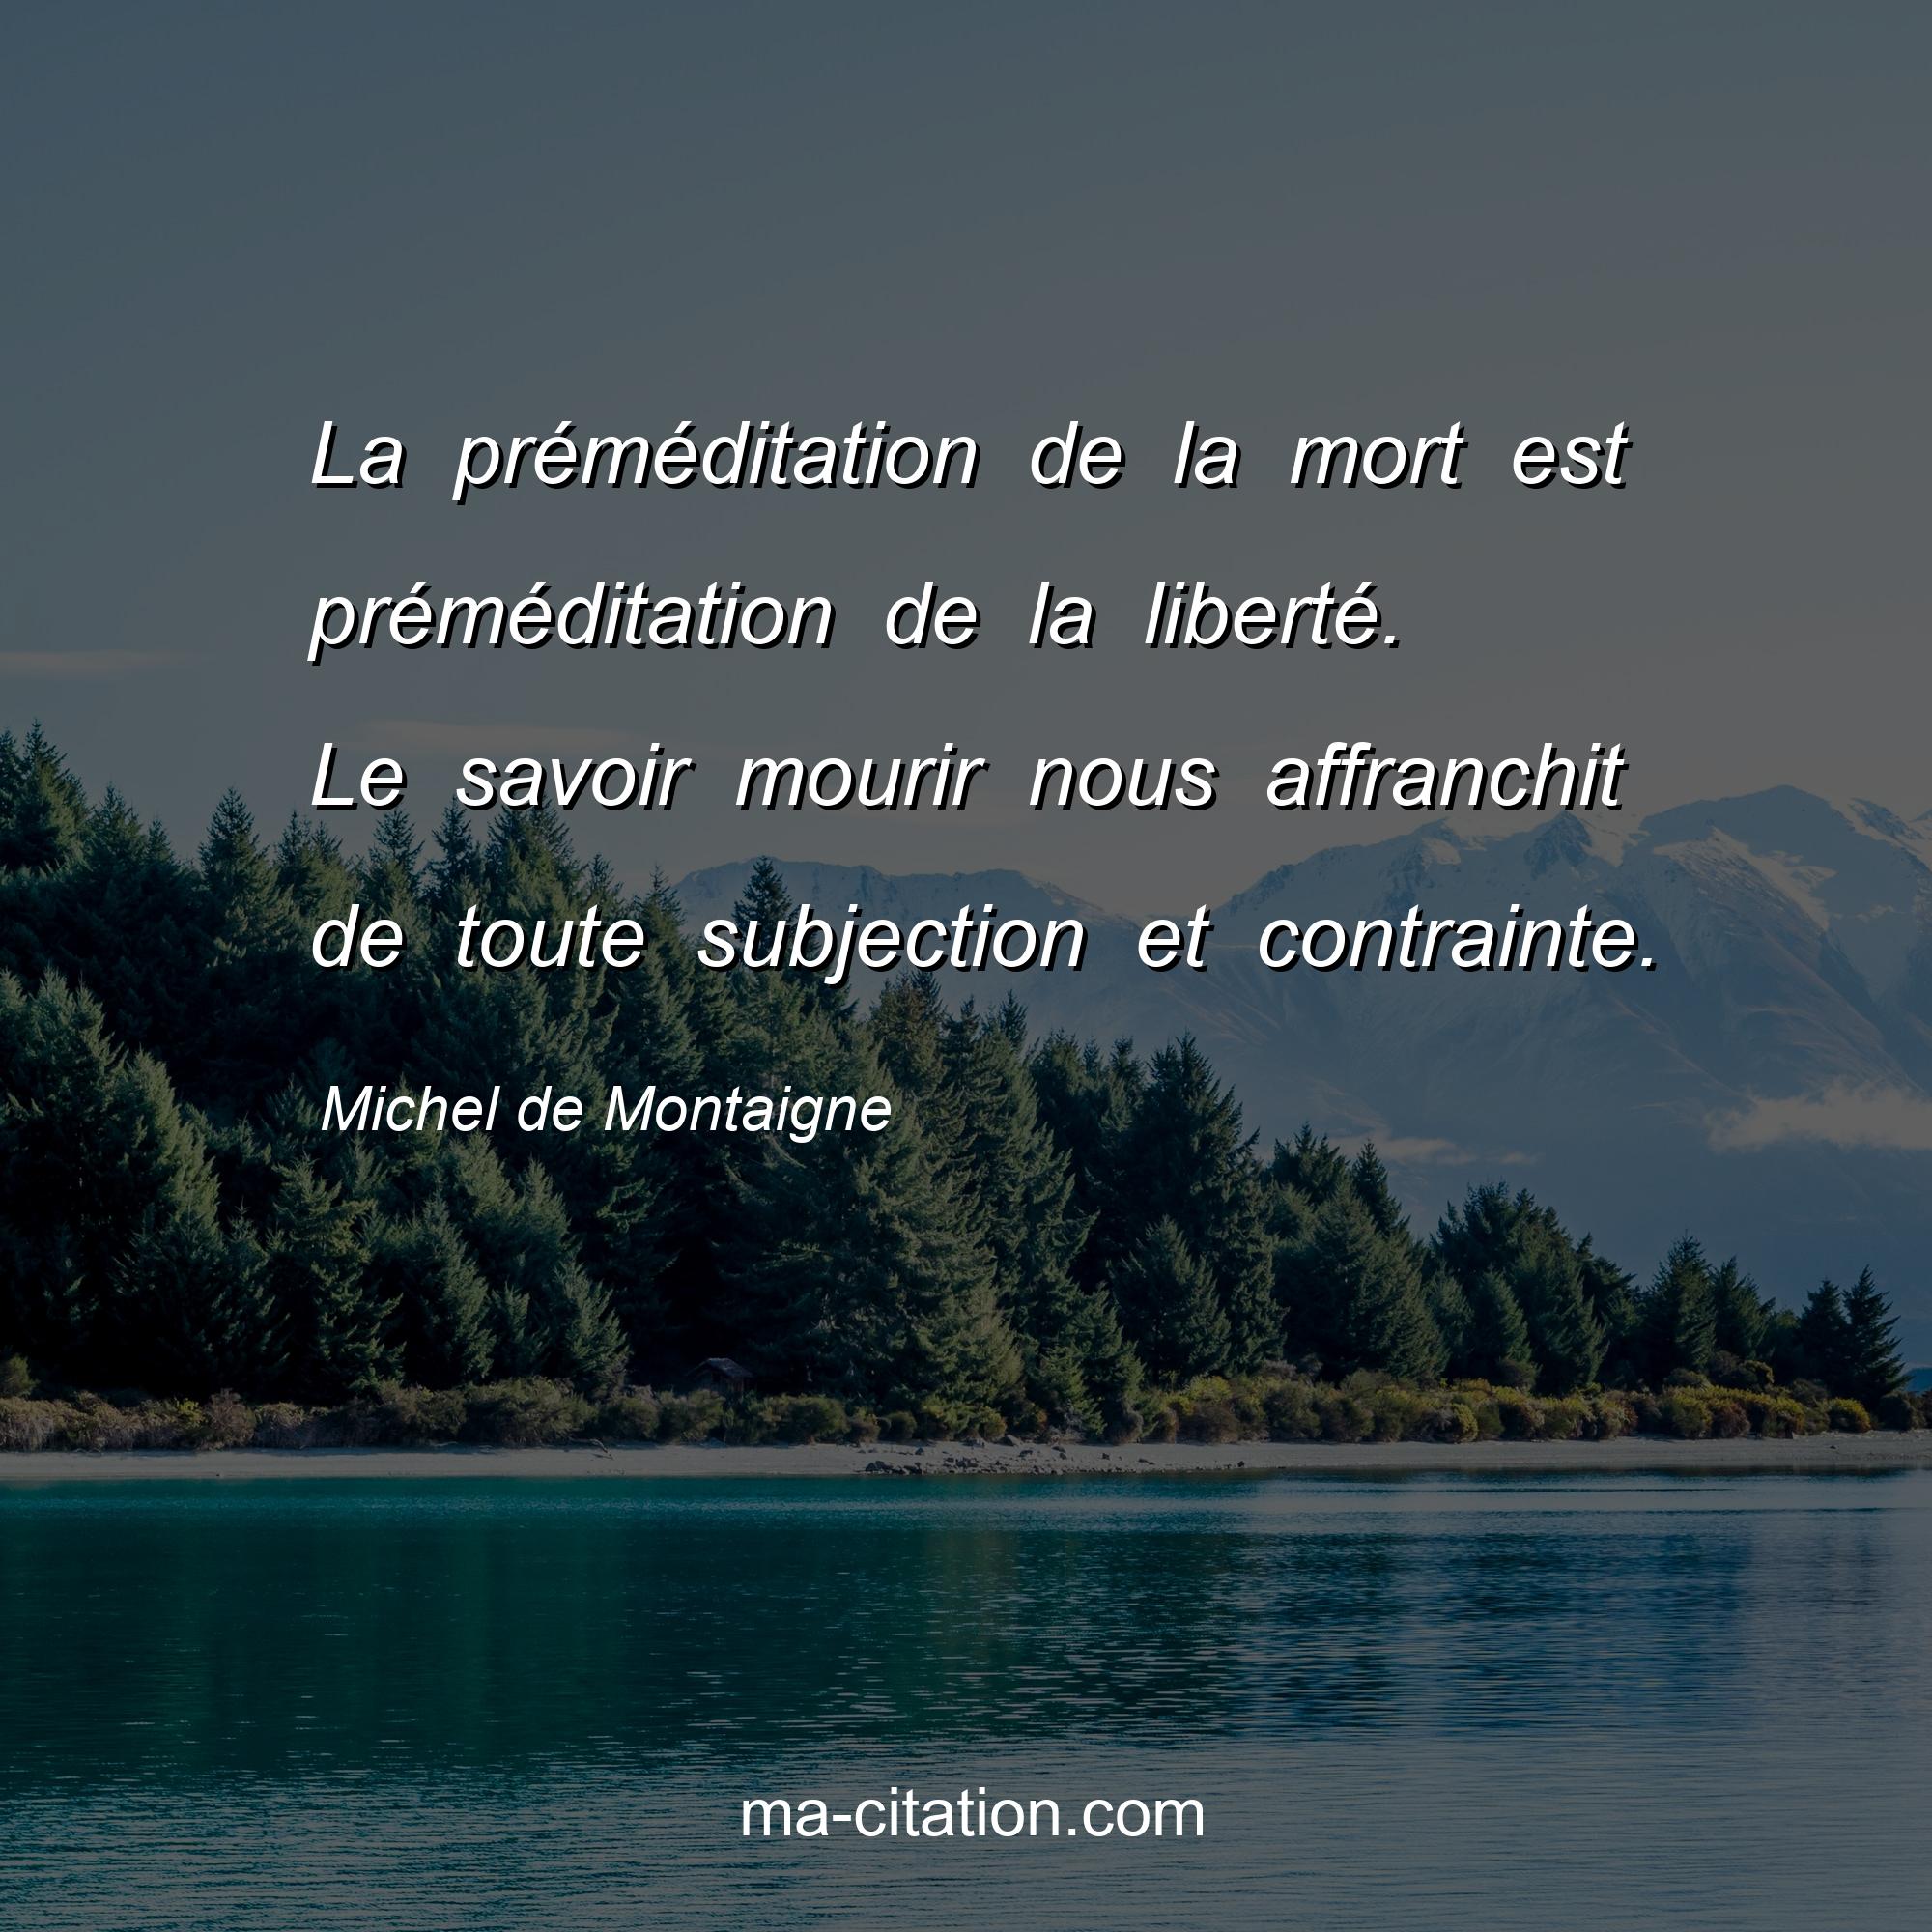 Michel de Montaigne : La préméditation de la mort est préméditation de la liberté. Le savoir mourir nous affranchit de toute subjection et contrainte.